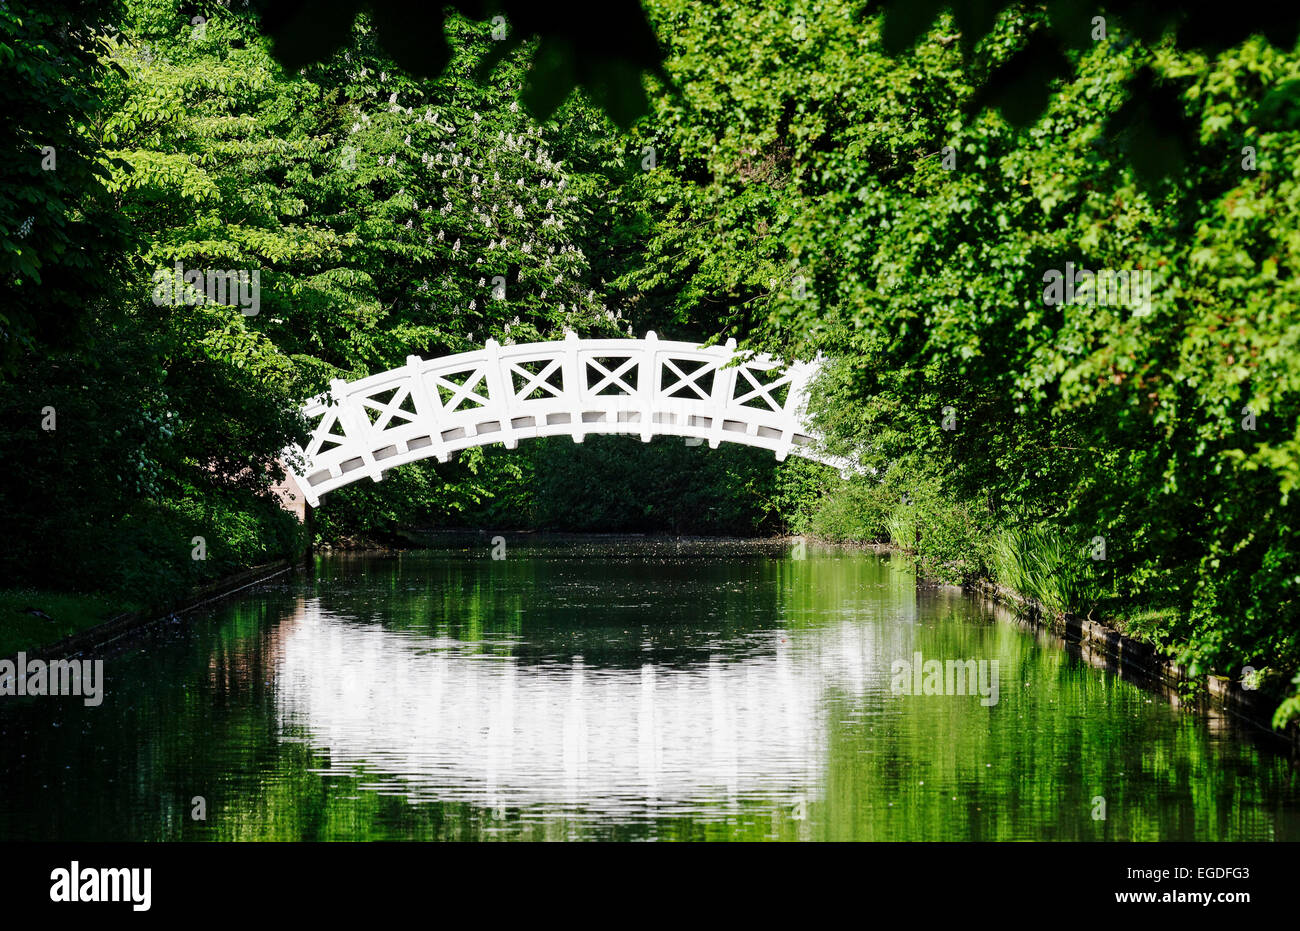 Puente chino, también llamado Palladio puente sobre un canal en los jardines del castillo de Schwetzingen, el puente fue diseñado por Andrea Palladio, Schwetzingen, Baden-Wurtemberg, Alemania Foto de stock